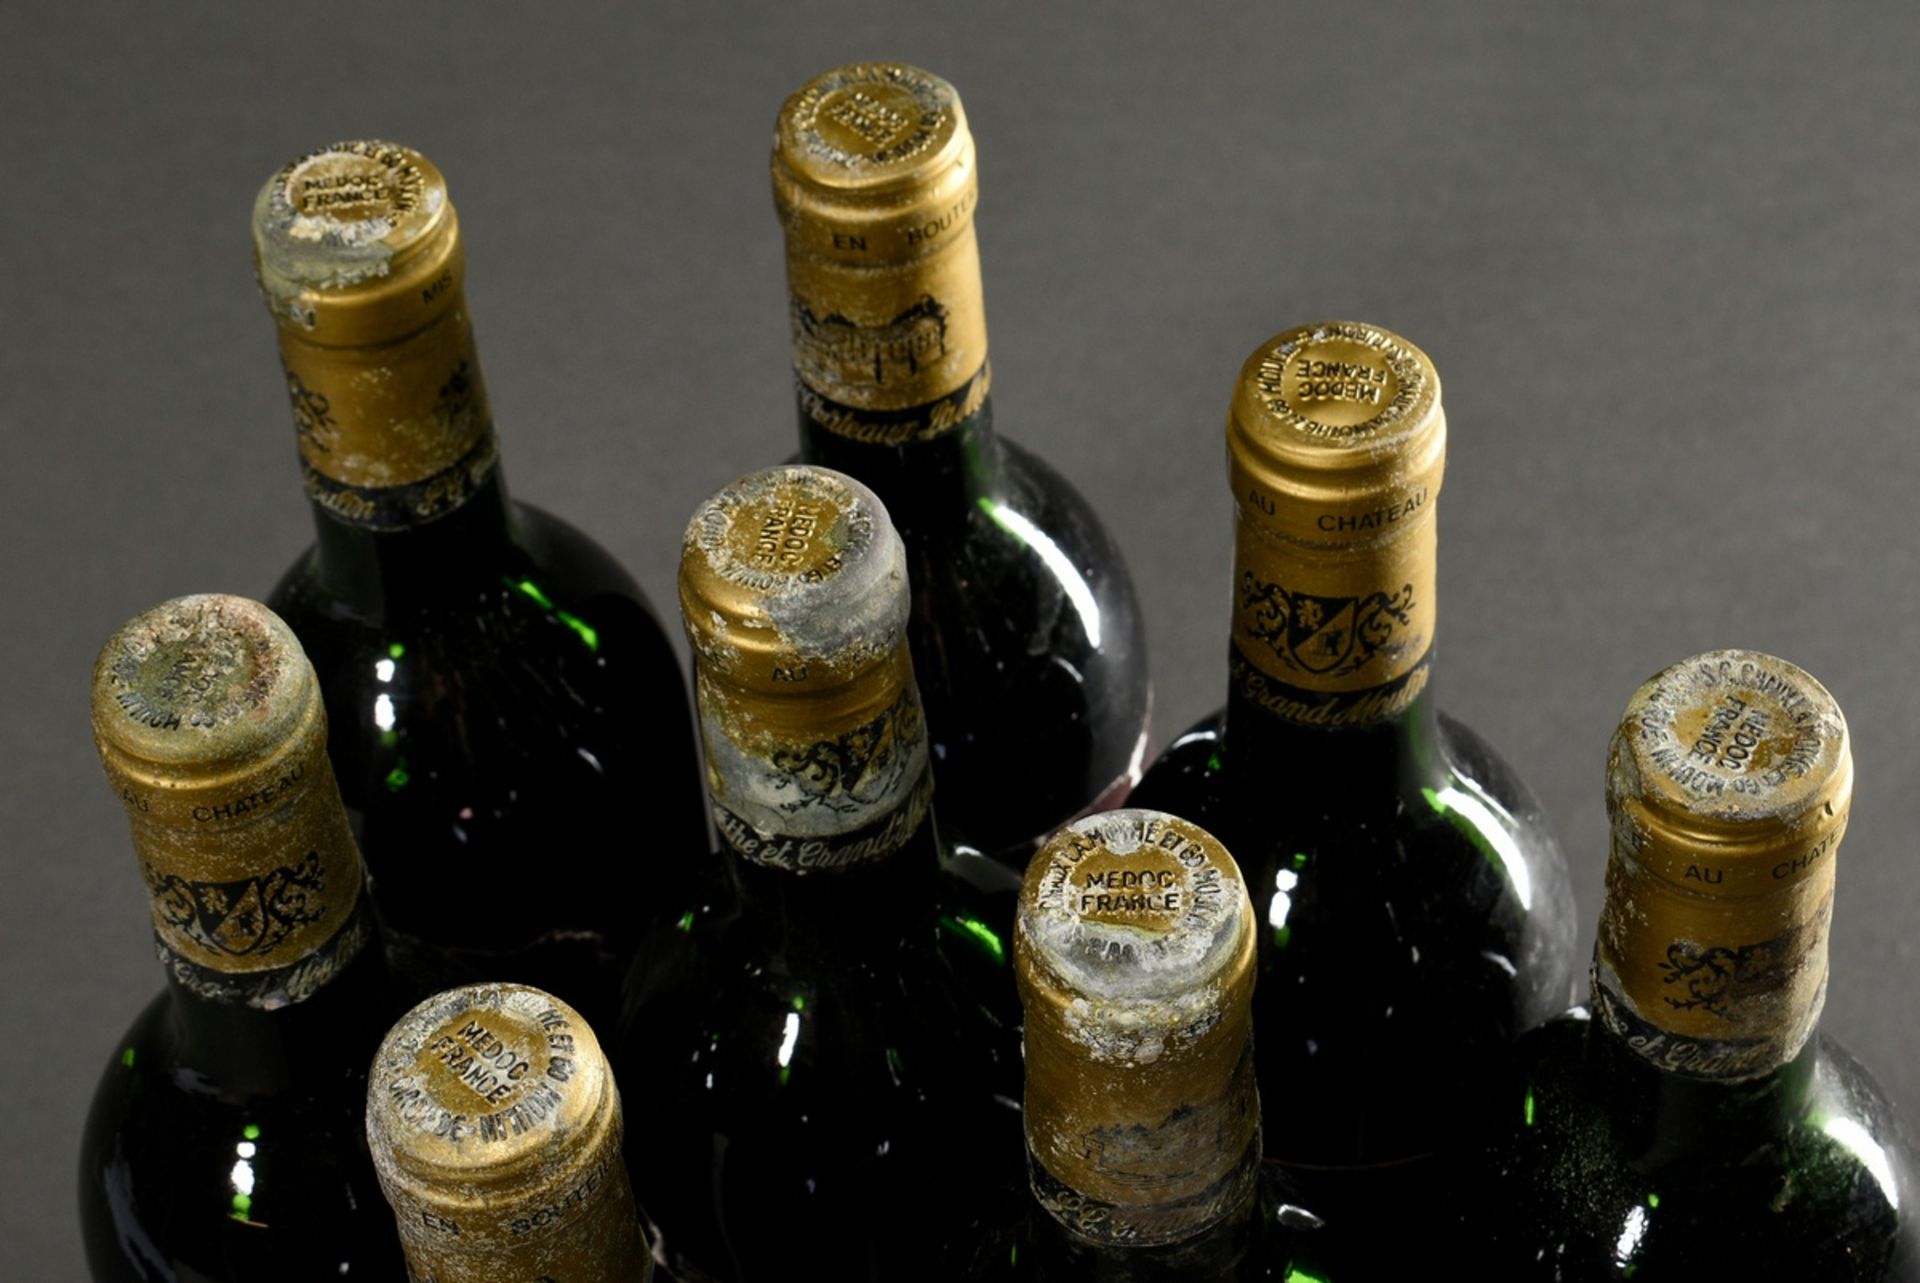 6 Flaschen 1985 Chateau La Mothe, mebac, Haut Medoc, Frankreich, Rotwein, 0,75l, durchgehend gute K - Bild 5 aus 5